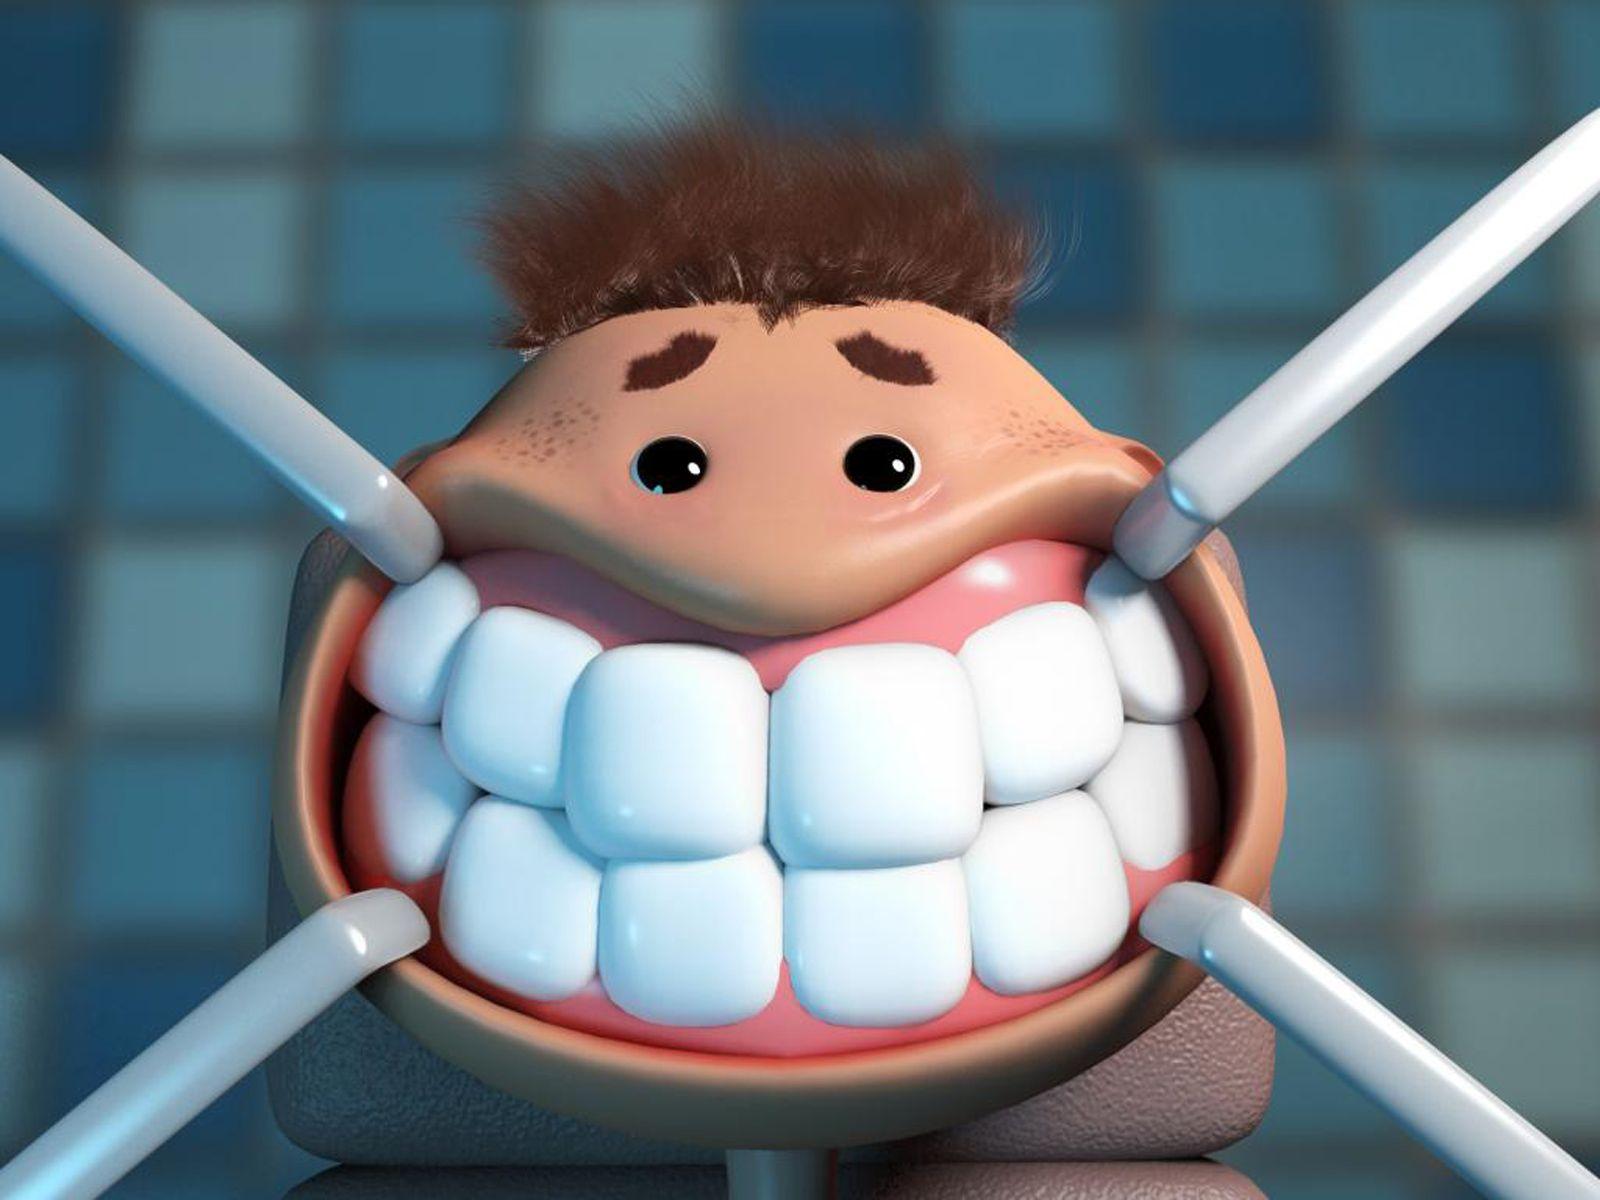 Dental Wallpaper Desktop 55 images